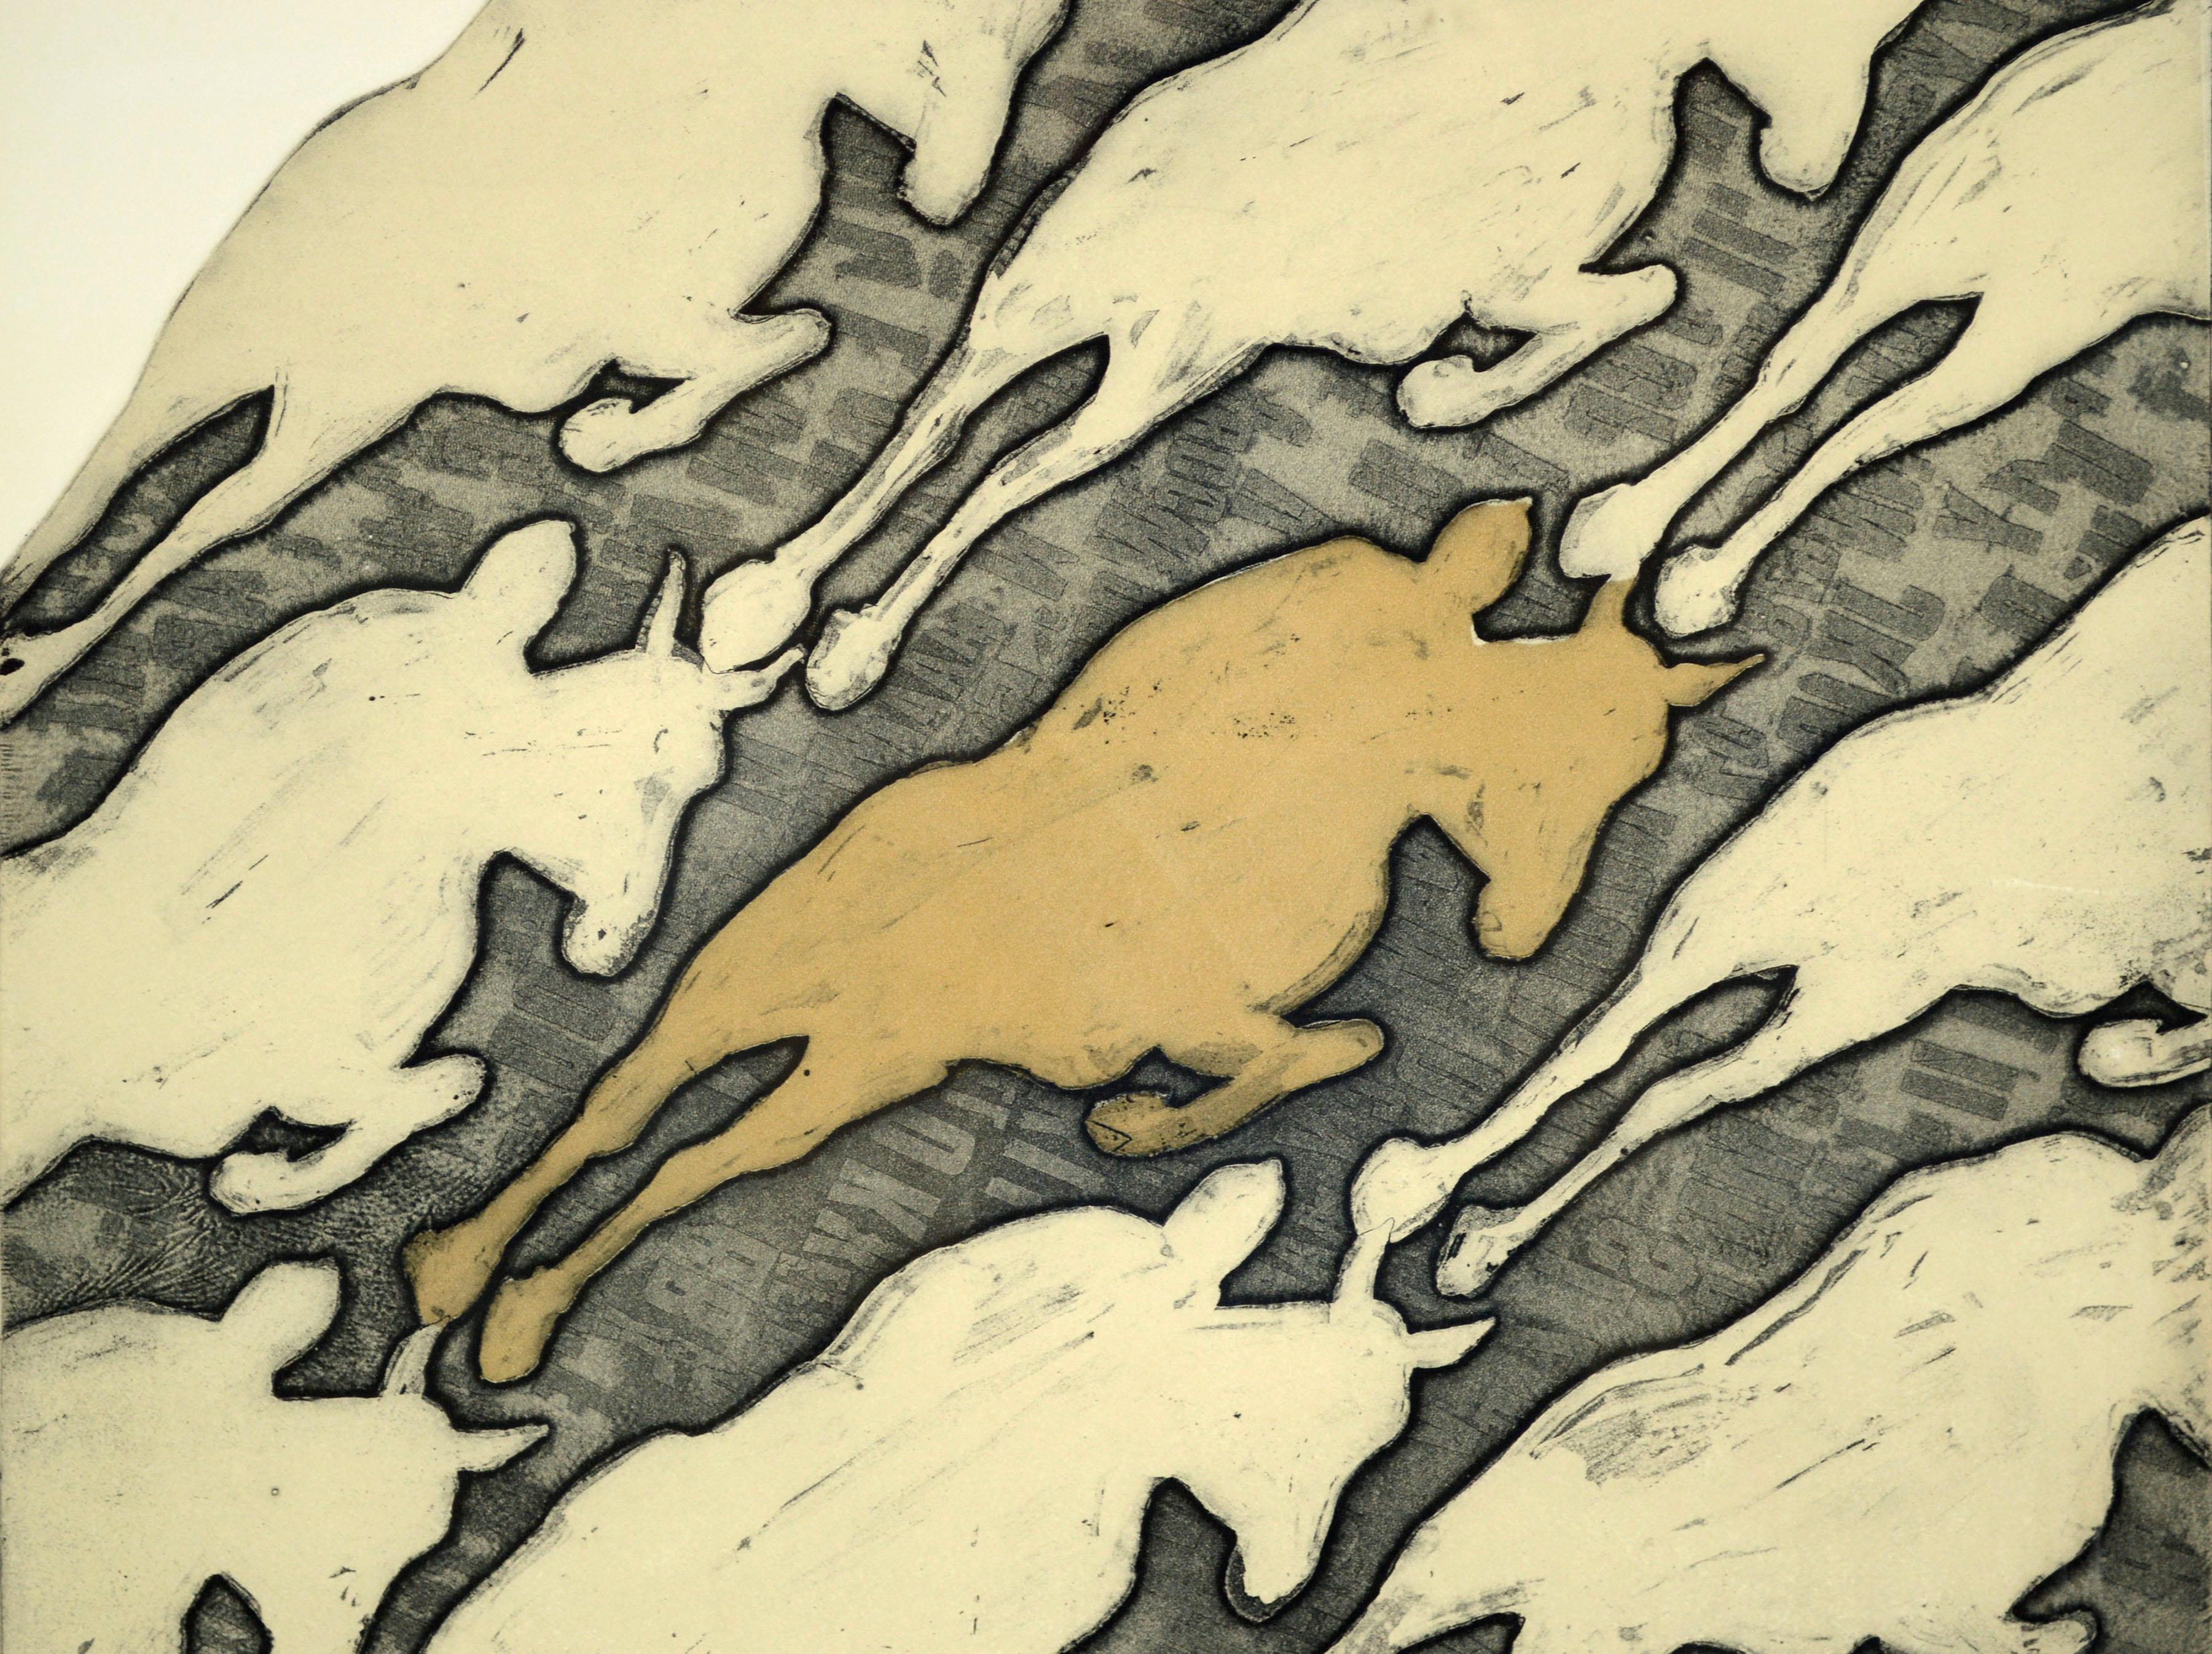 Eine moderne Pop-Art-Radierung von Pferden aus den späten 1960er Jahren von Marc Foster Grant (Amerikaner, geb. 1947). Das Motiv des galoppierenden Pferdes wiederholt sich im Stil Warhols mit neutralen Erdtönen in Hellbraun, Creme und Off-White, die